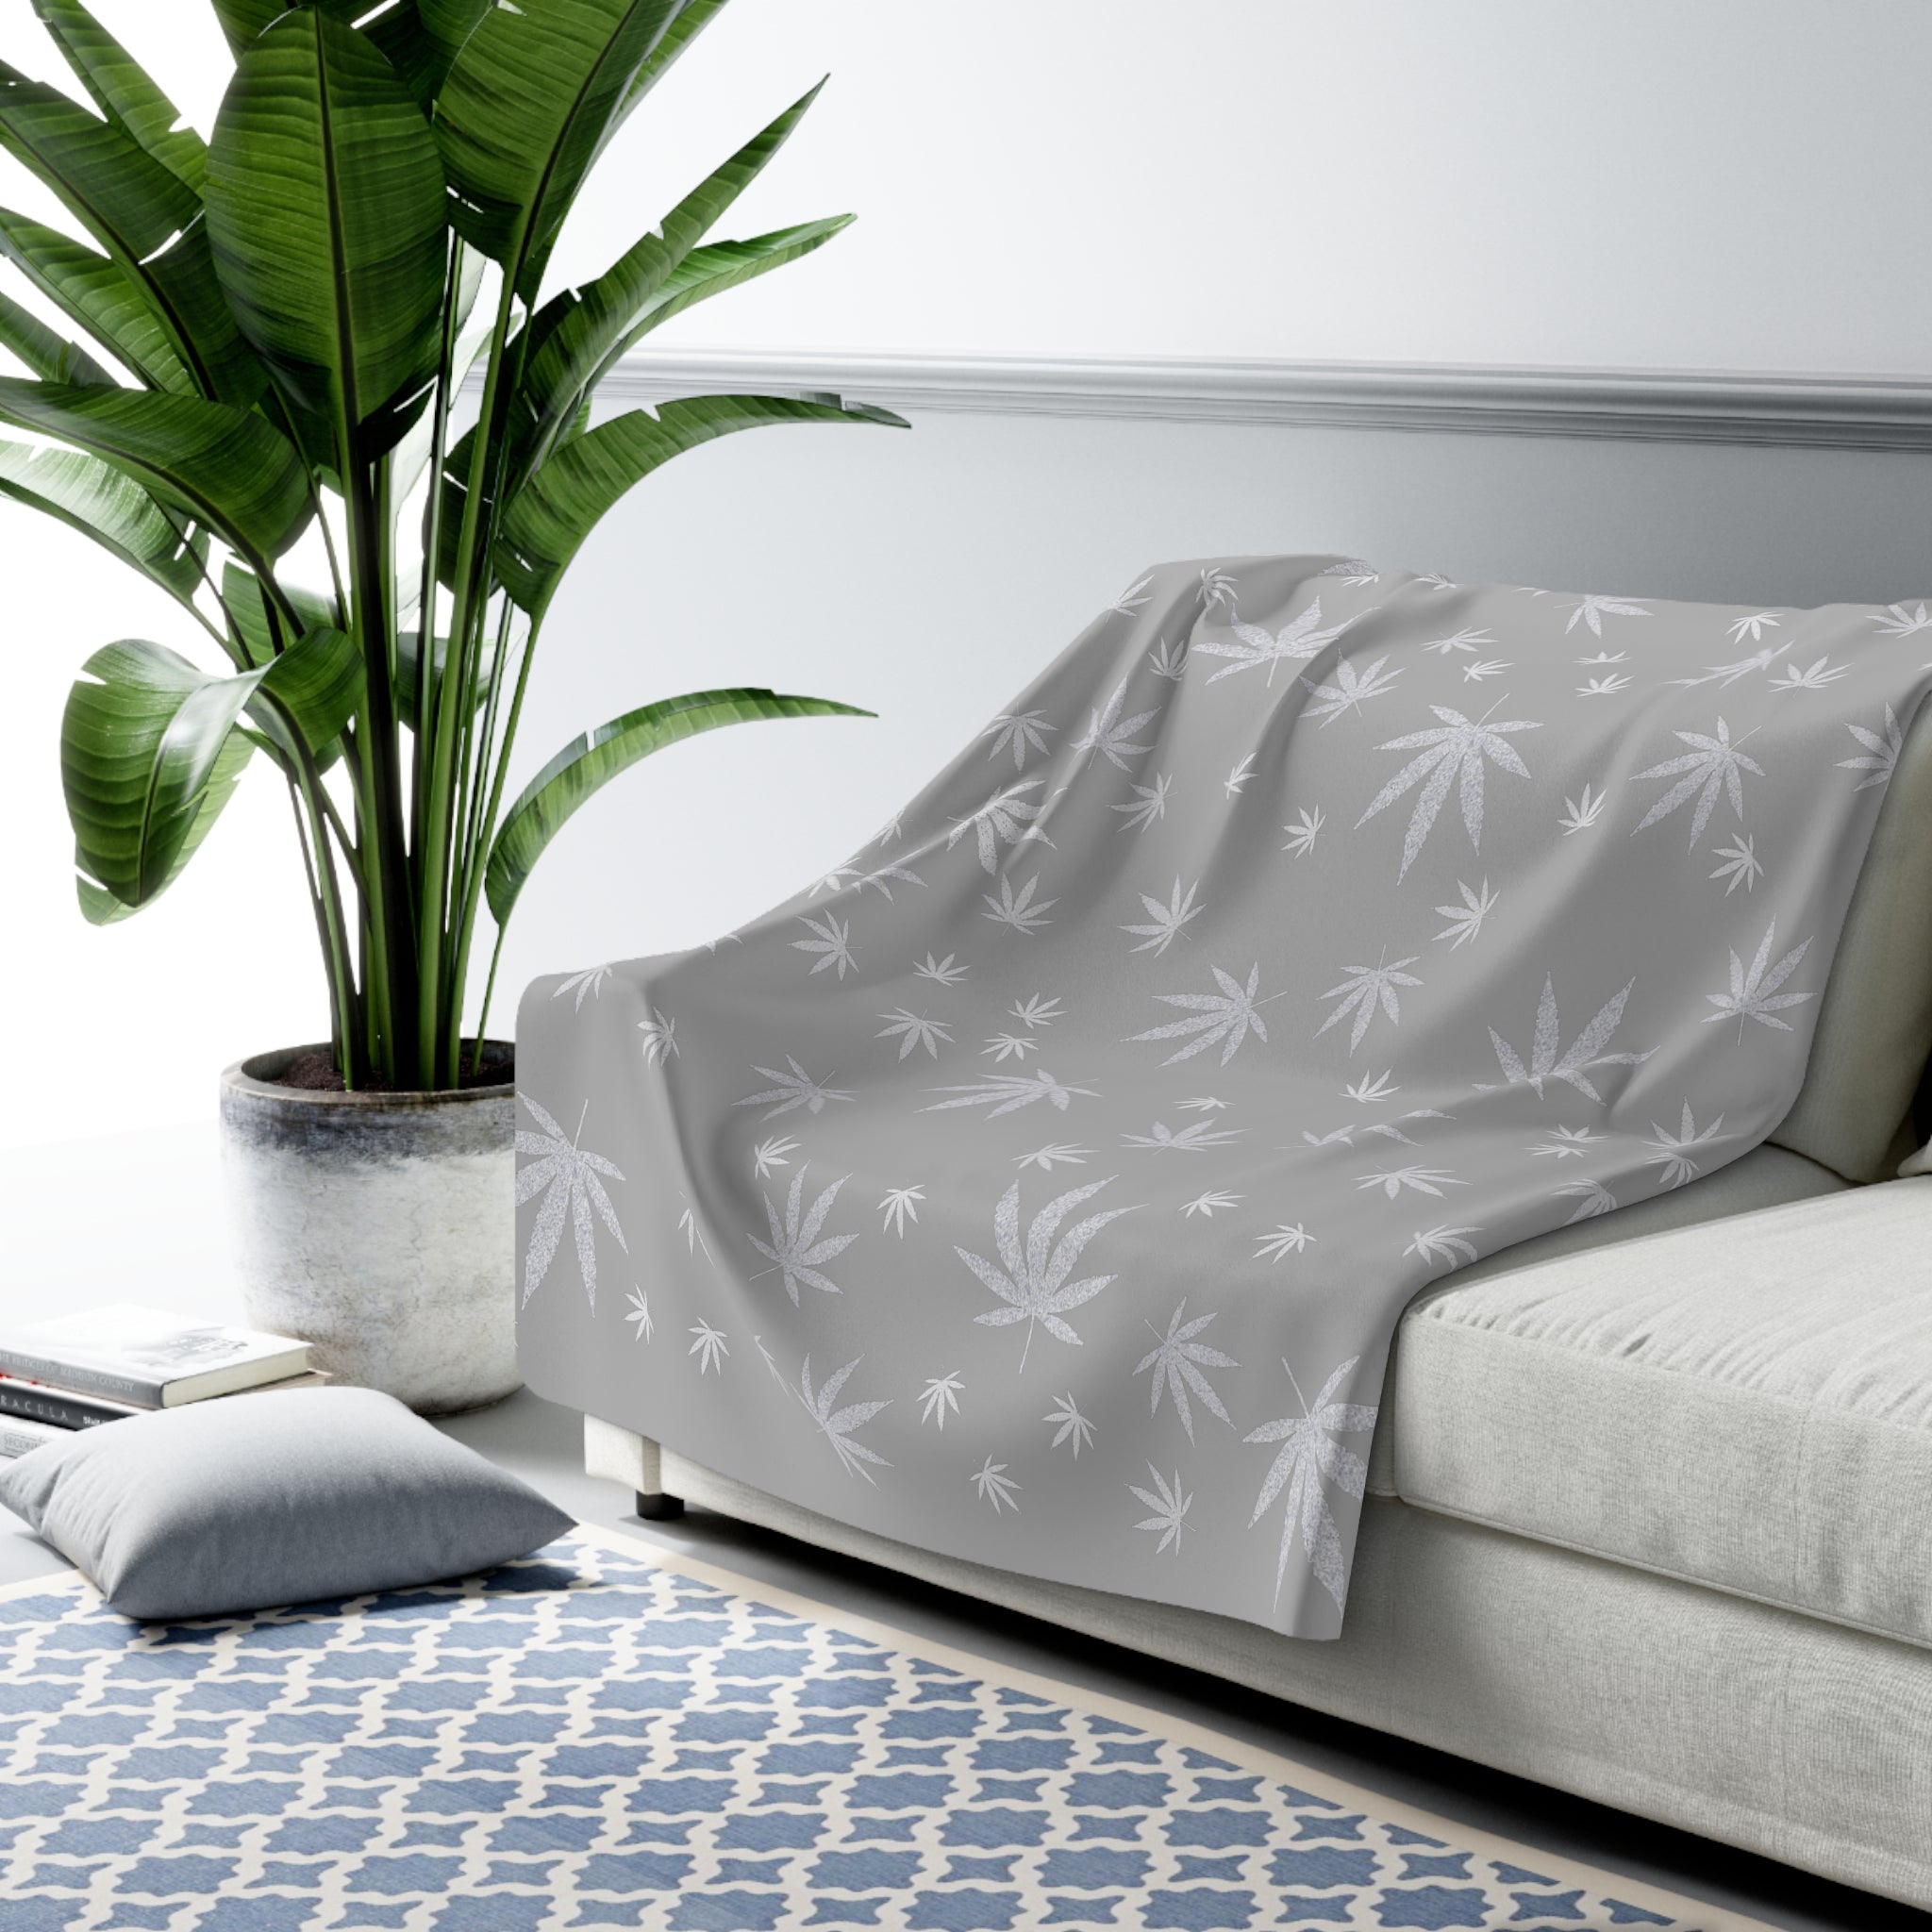 Grey and Silver Cannabis Leaf Sherpa Fleece Blanket